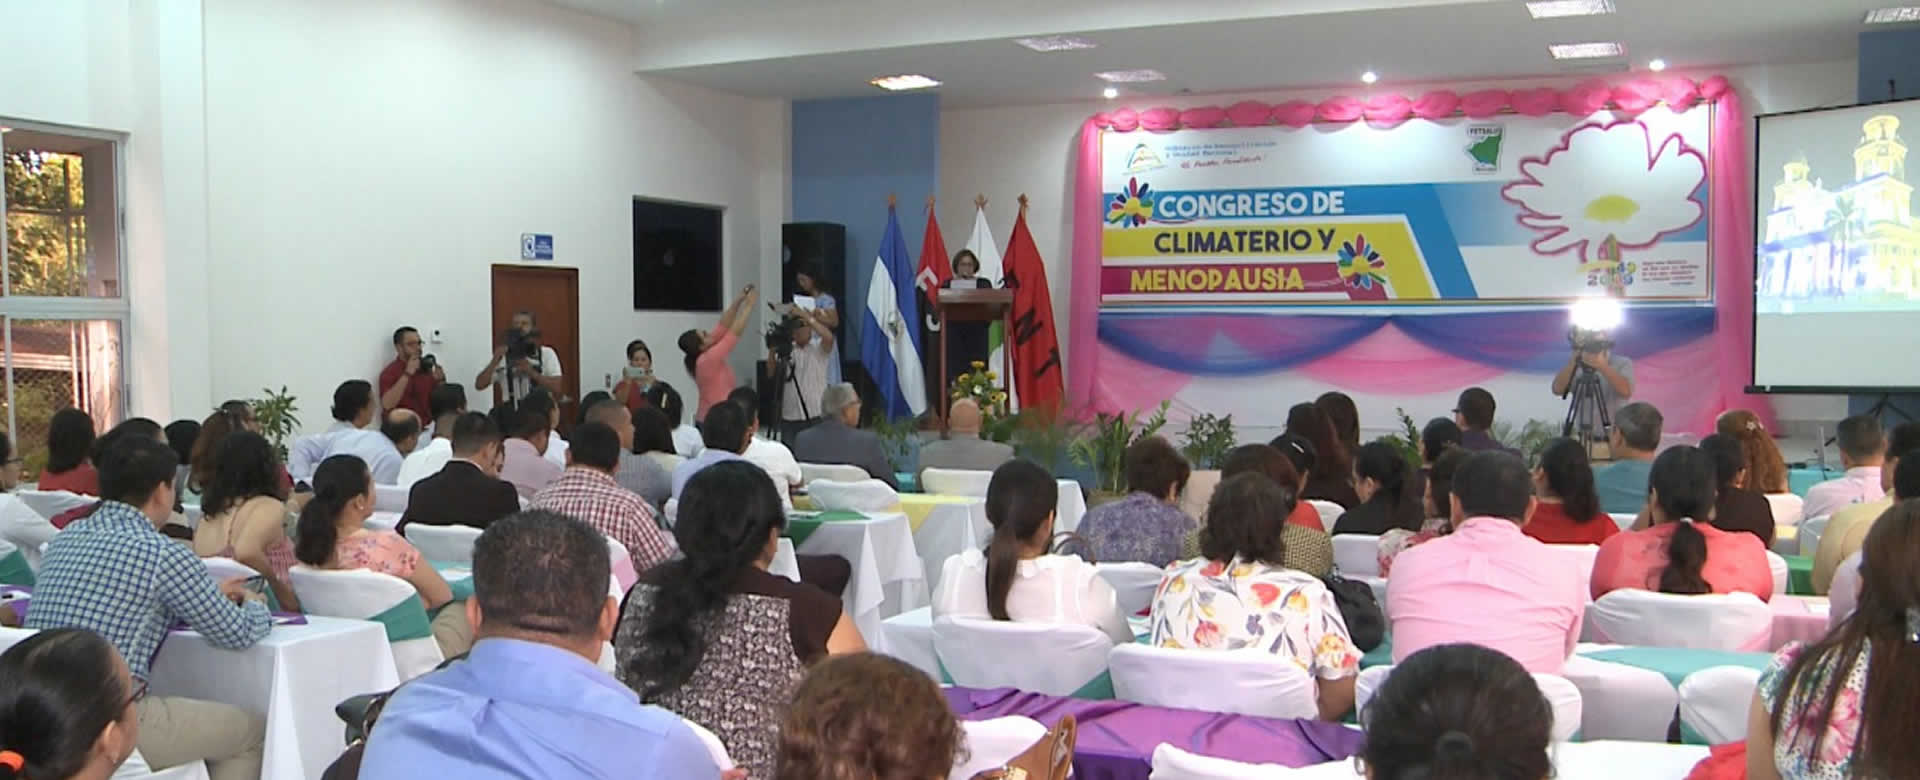 Ministerio de Salud realiza congreso sobre climaterio y menopausia